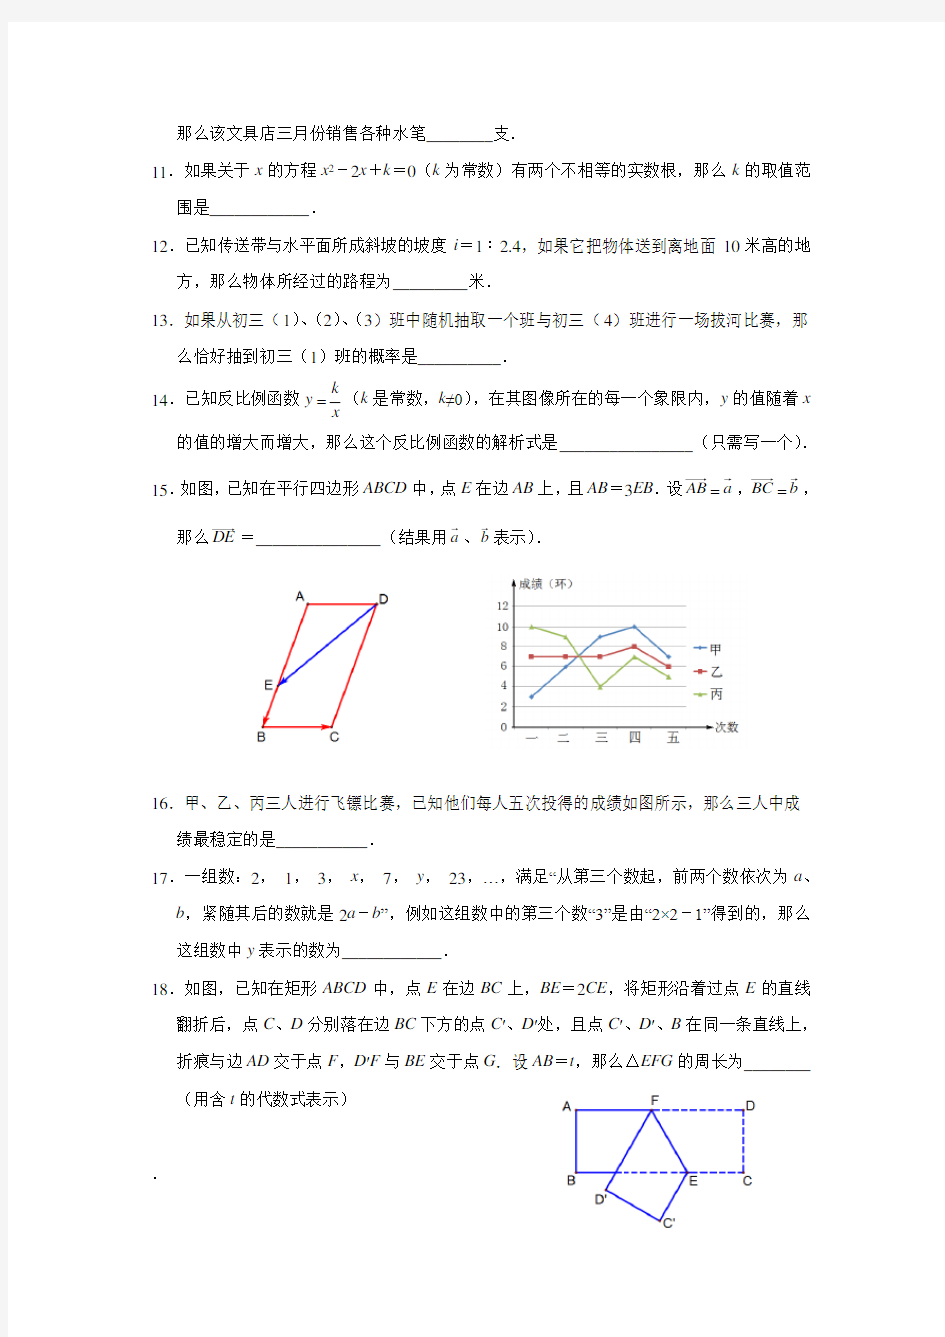 上海市2014年中考数学试题(含答案)